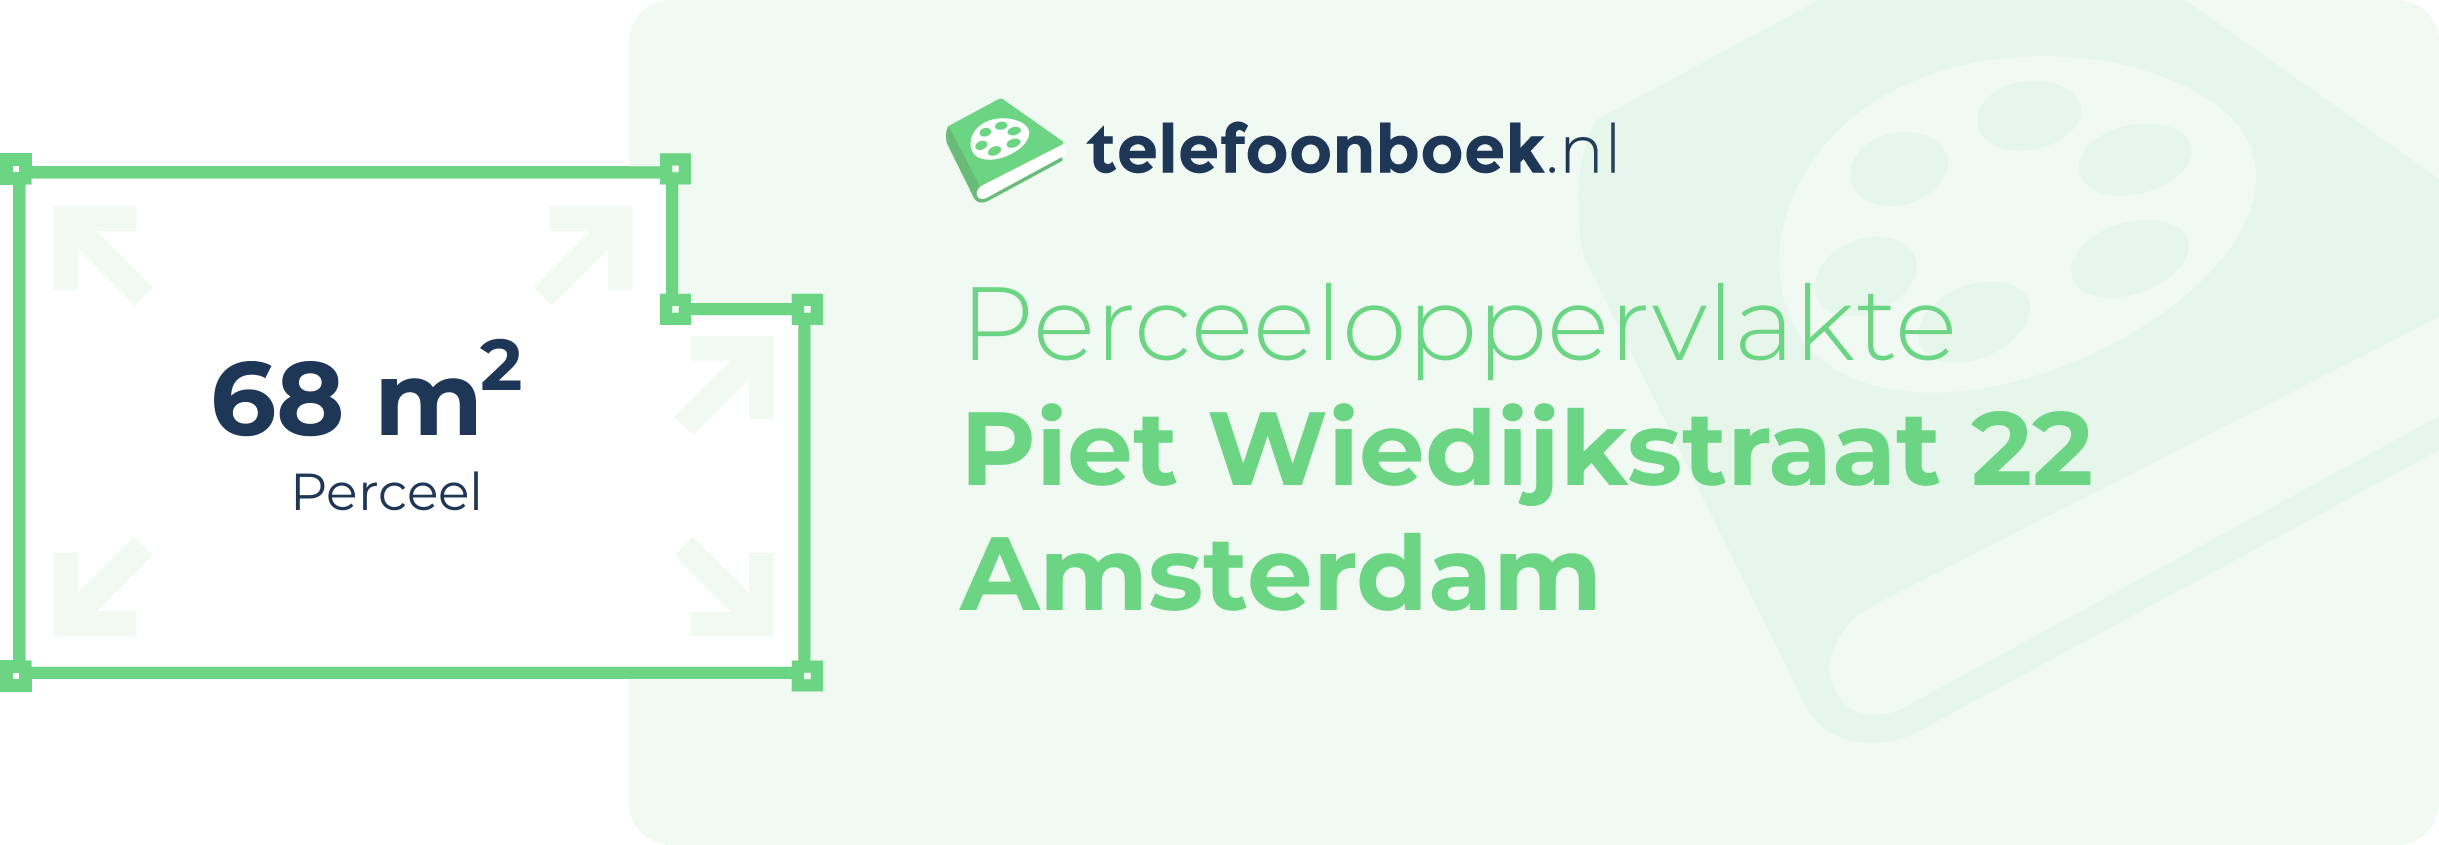 Perceeloppervlakte Piet Wiedijkstraat 22 Amsterdam